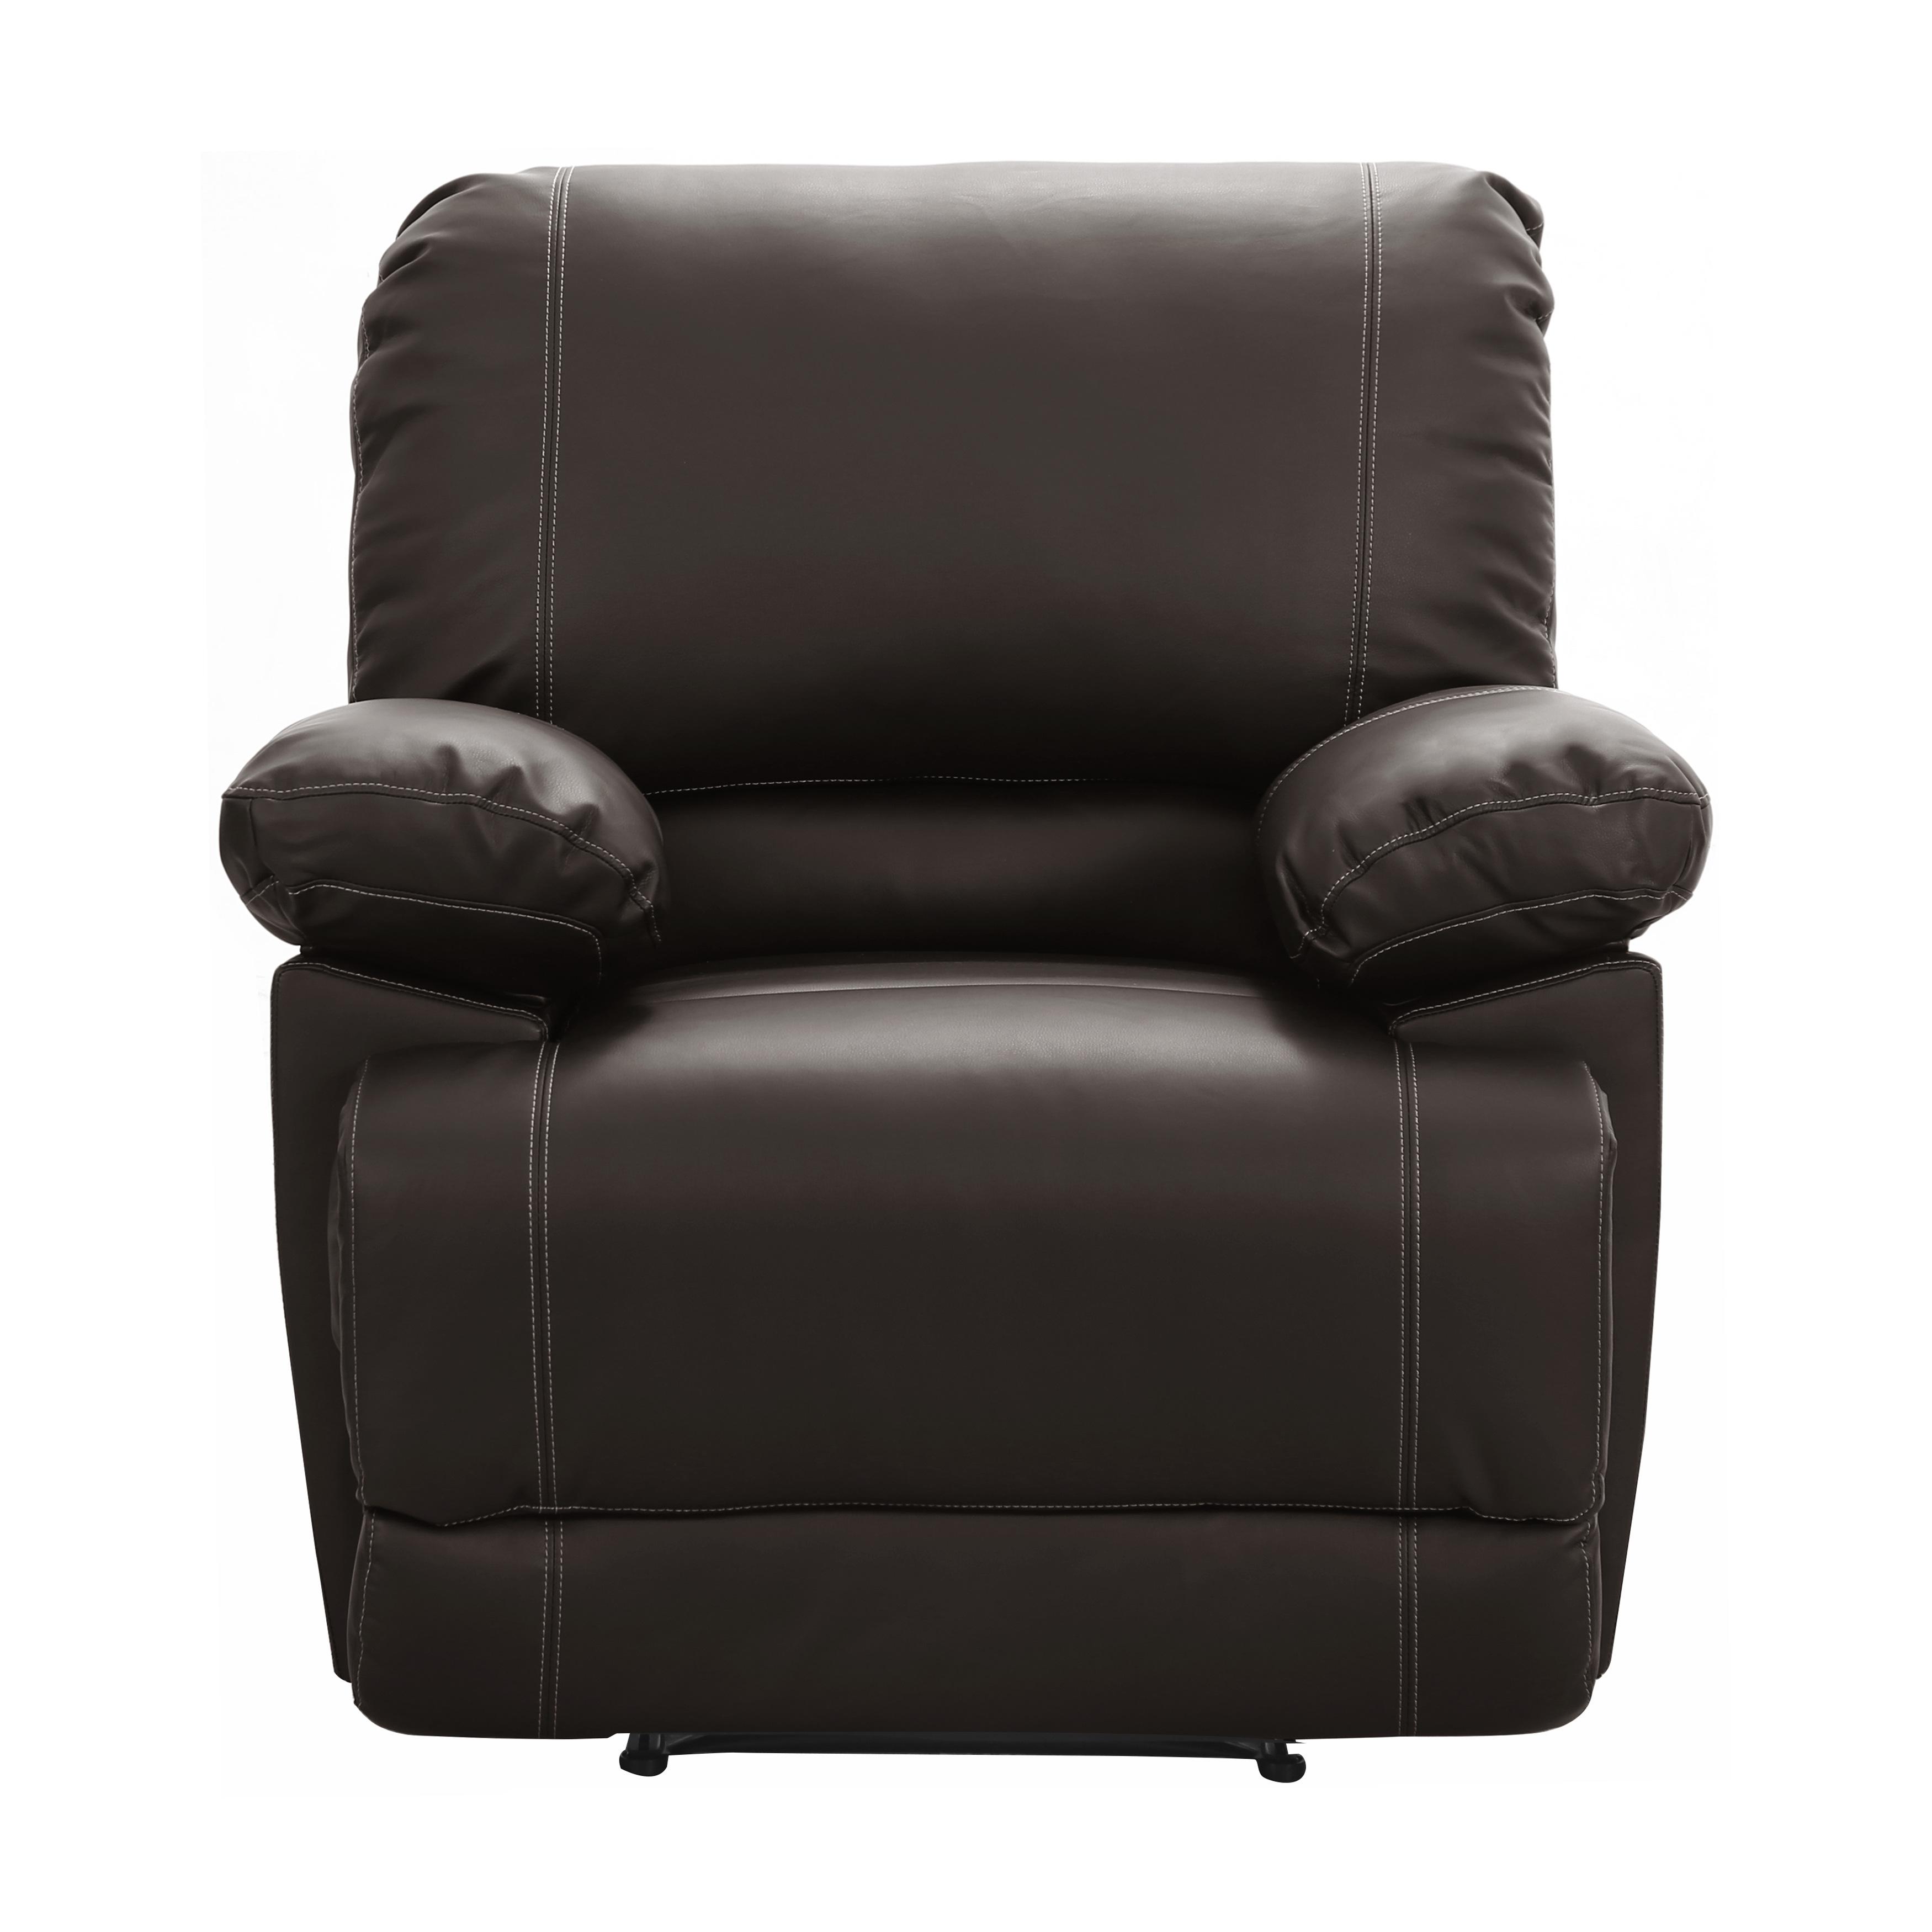   Cassville Chair 8403-1-C  